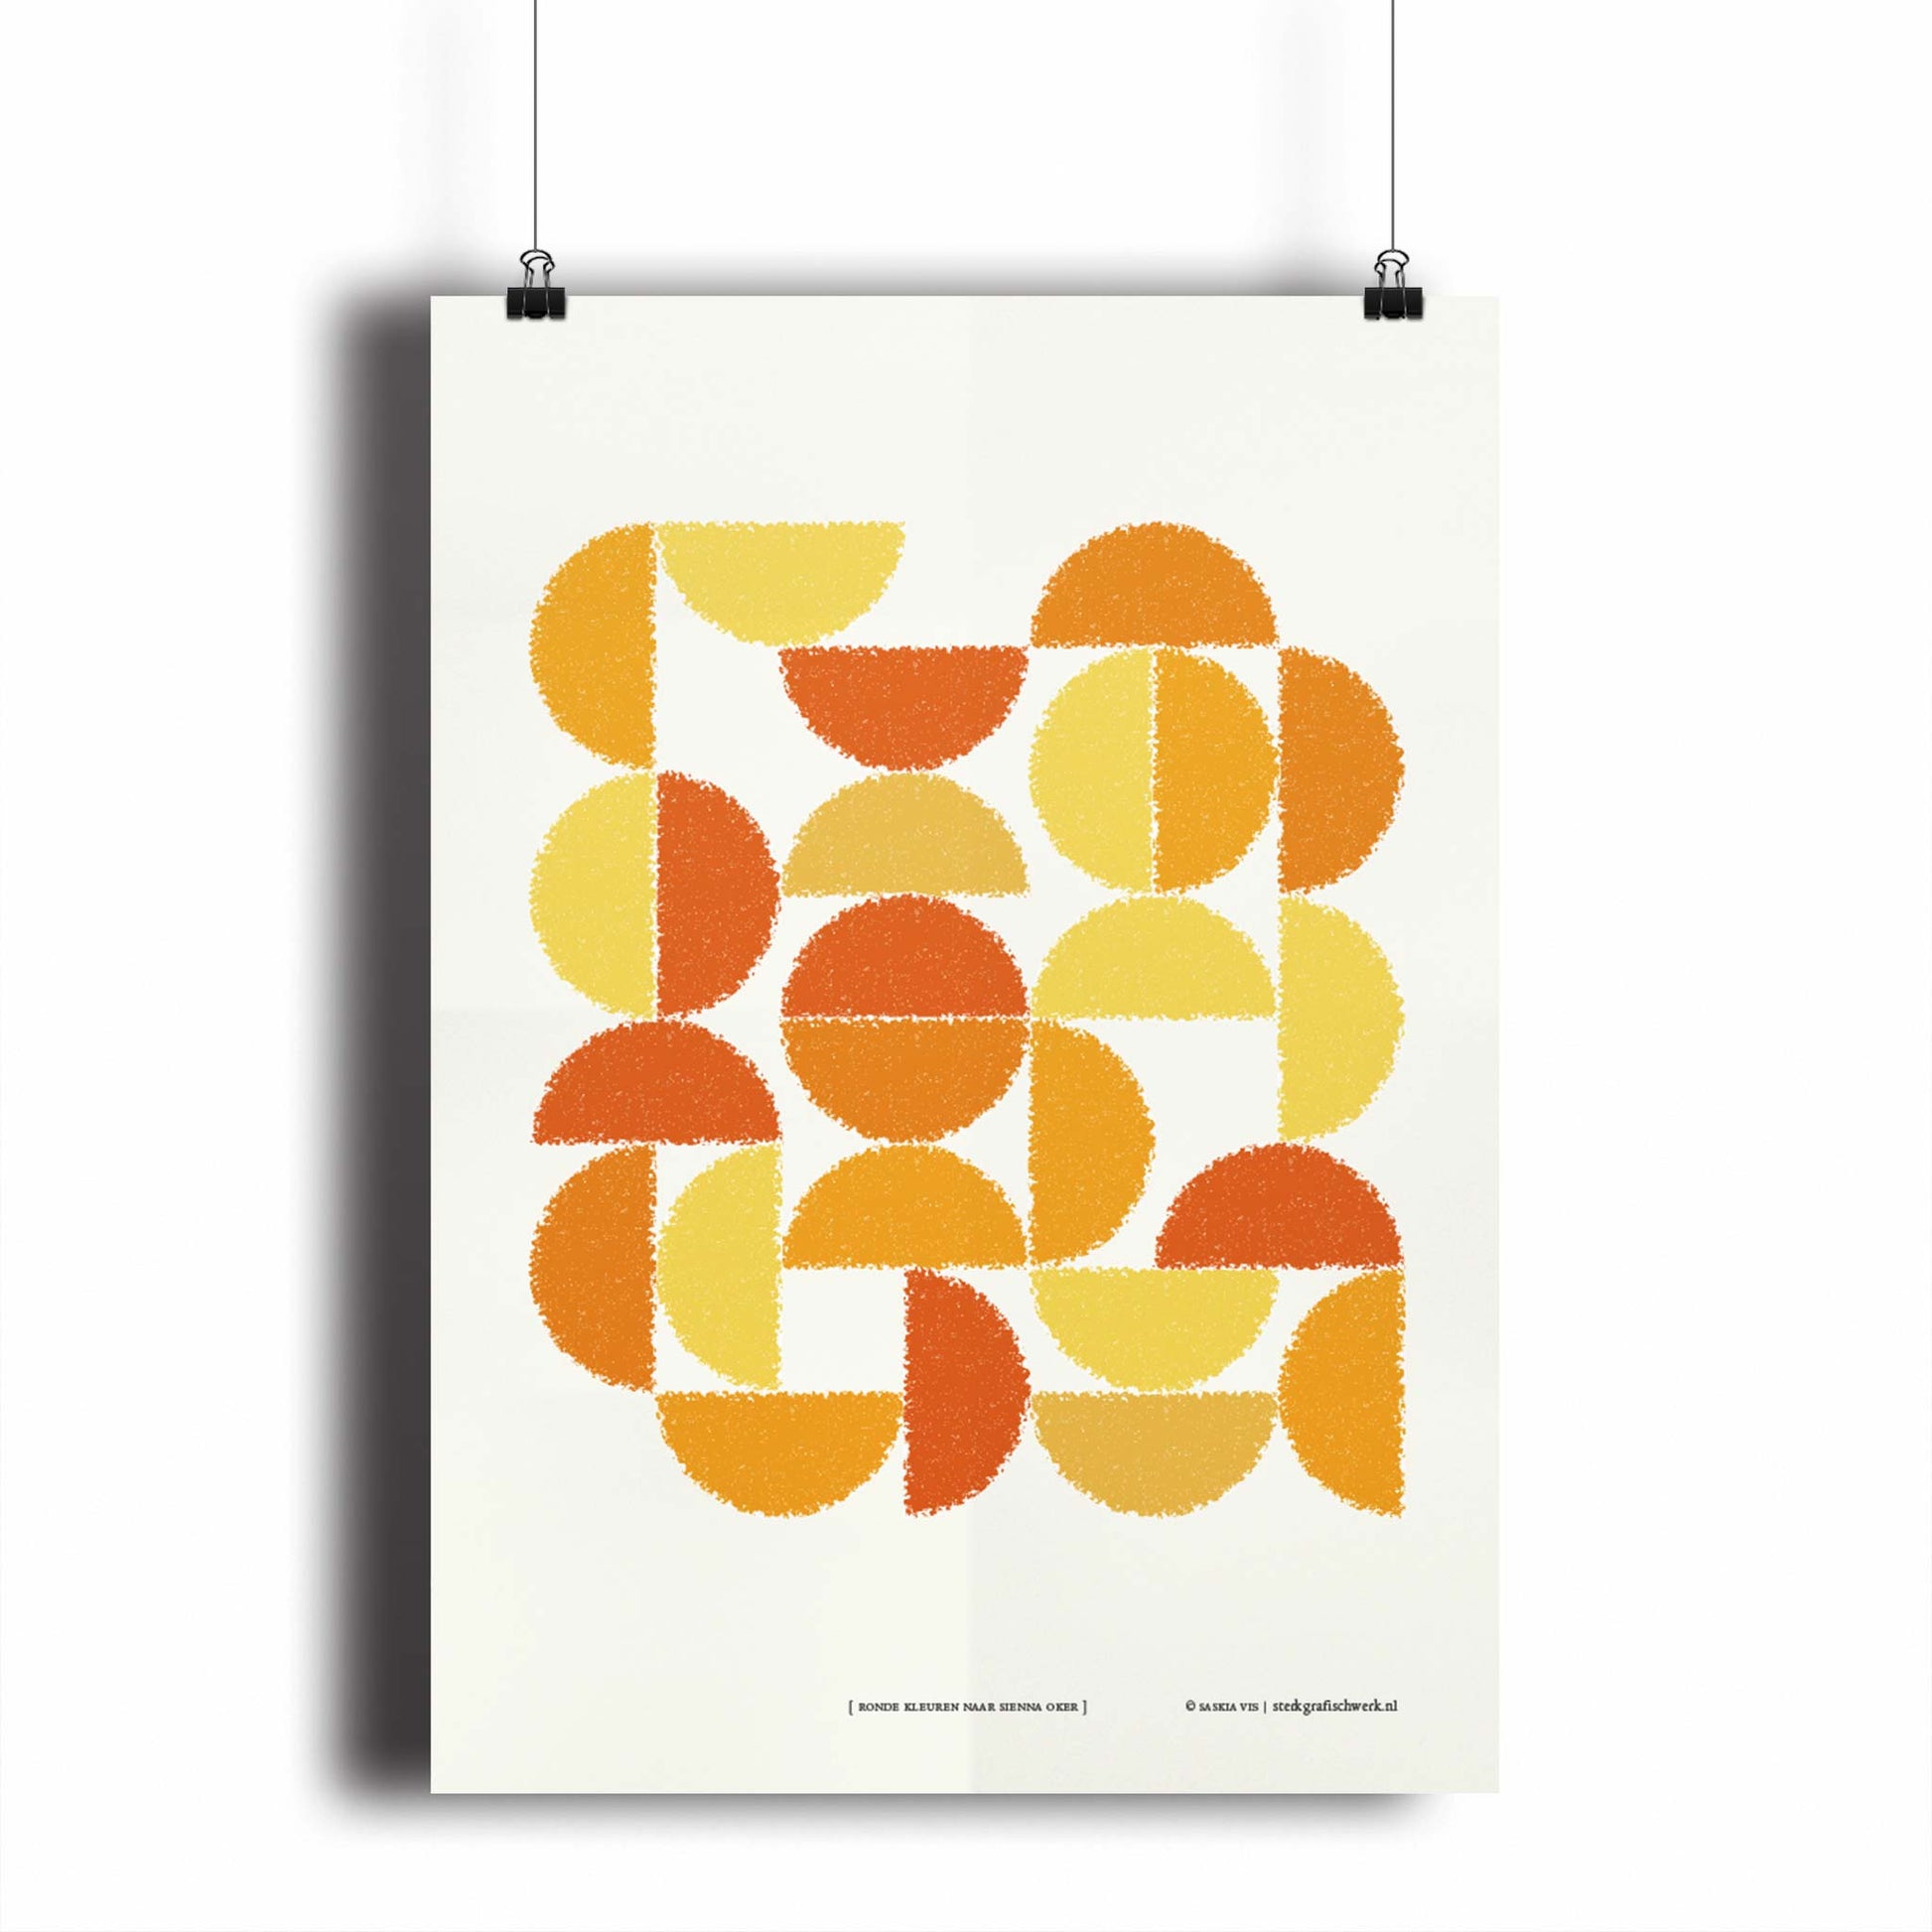 Productafbeelding, poster "ronde kleuren naar sienna oker", hangend aan een witte wand, een overzichtsfoto